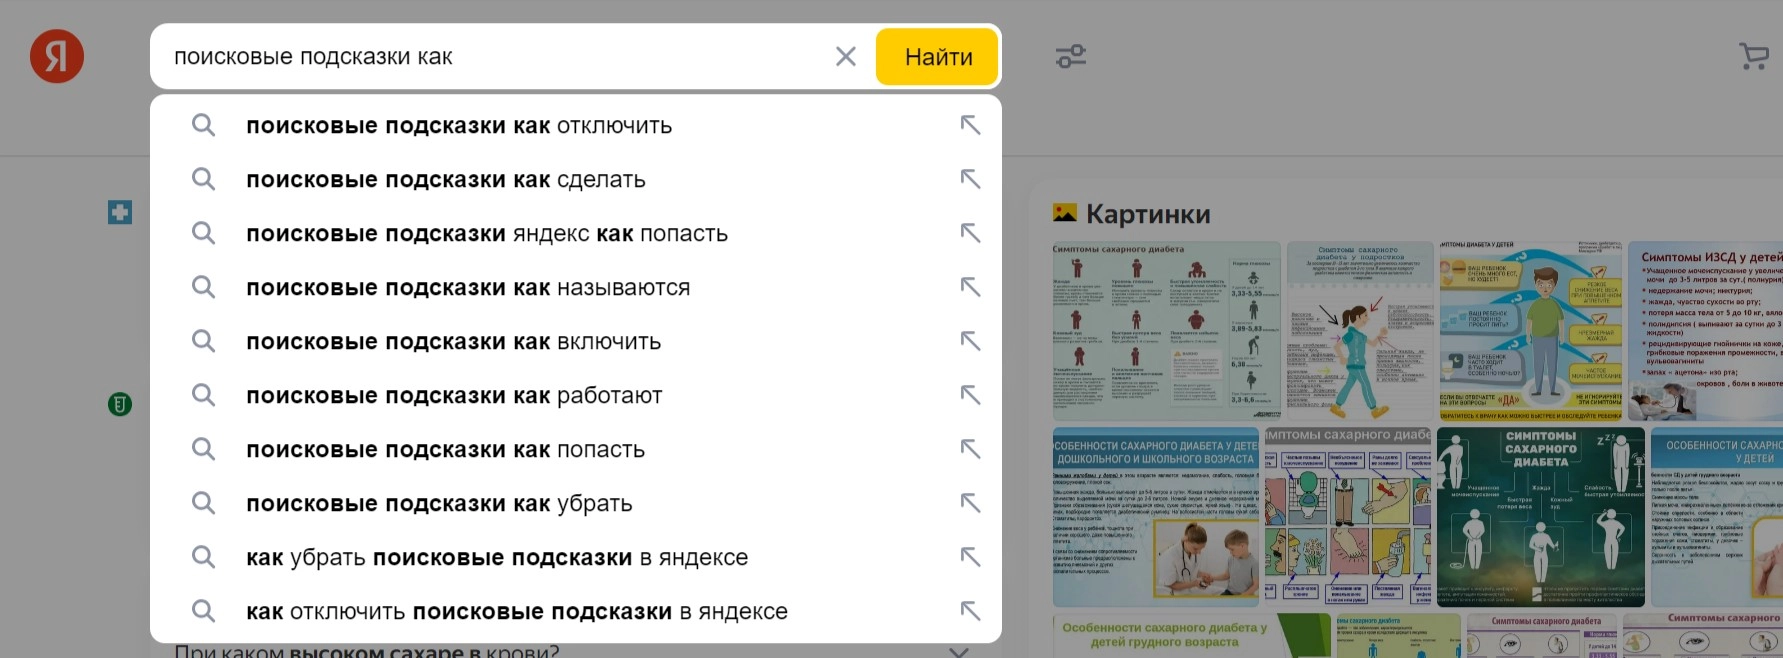 подсказки Яндекс